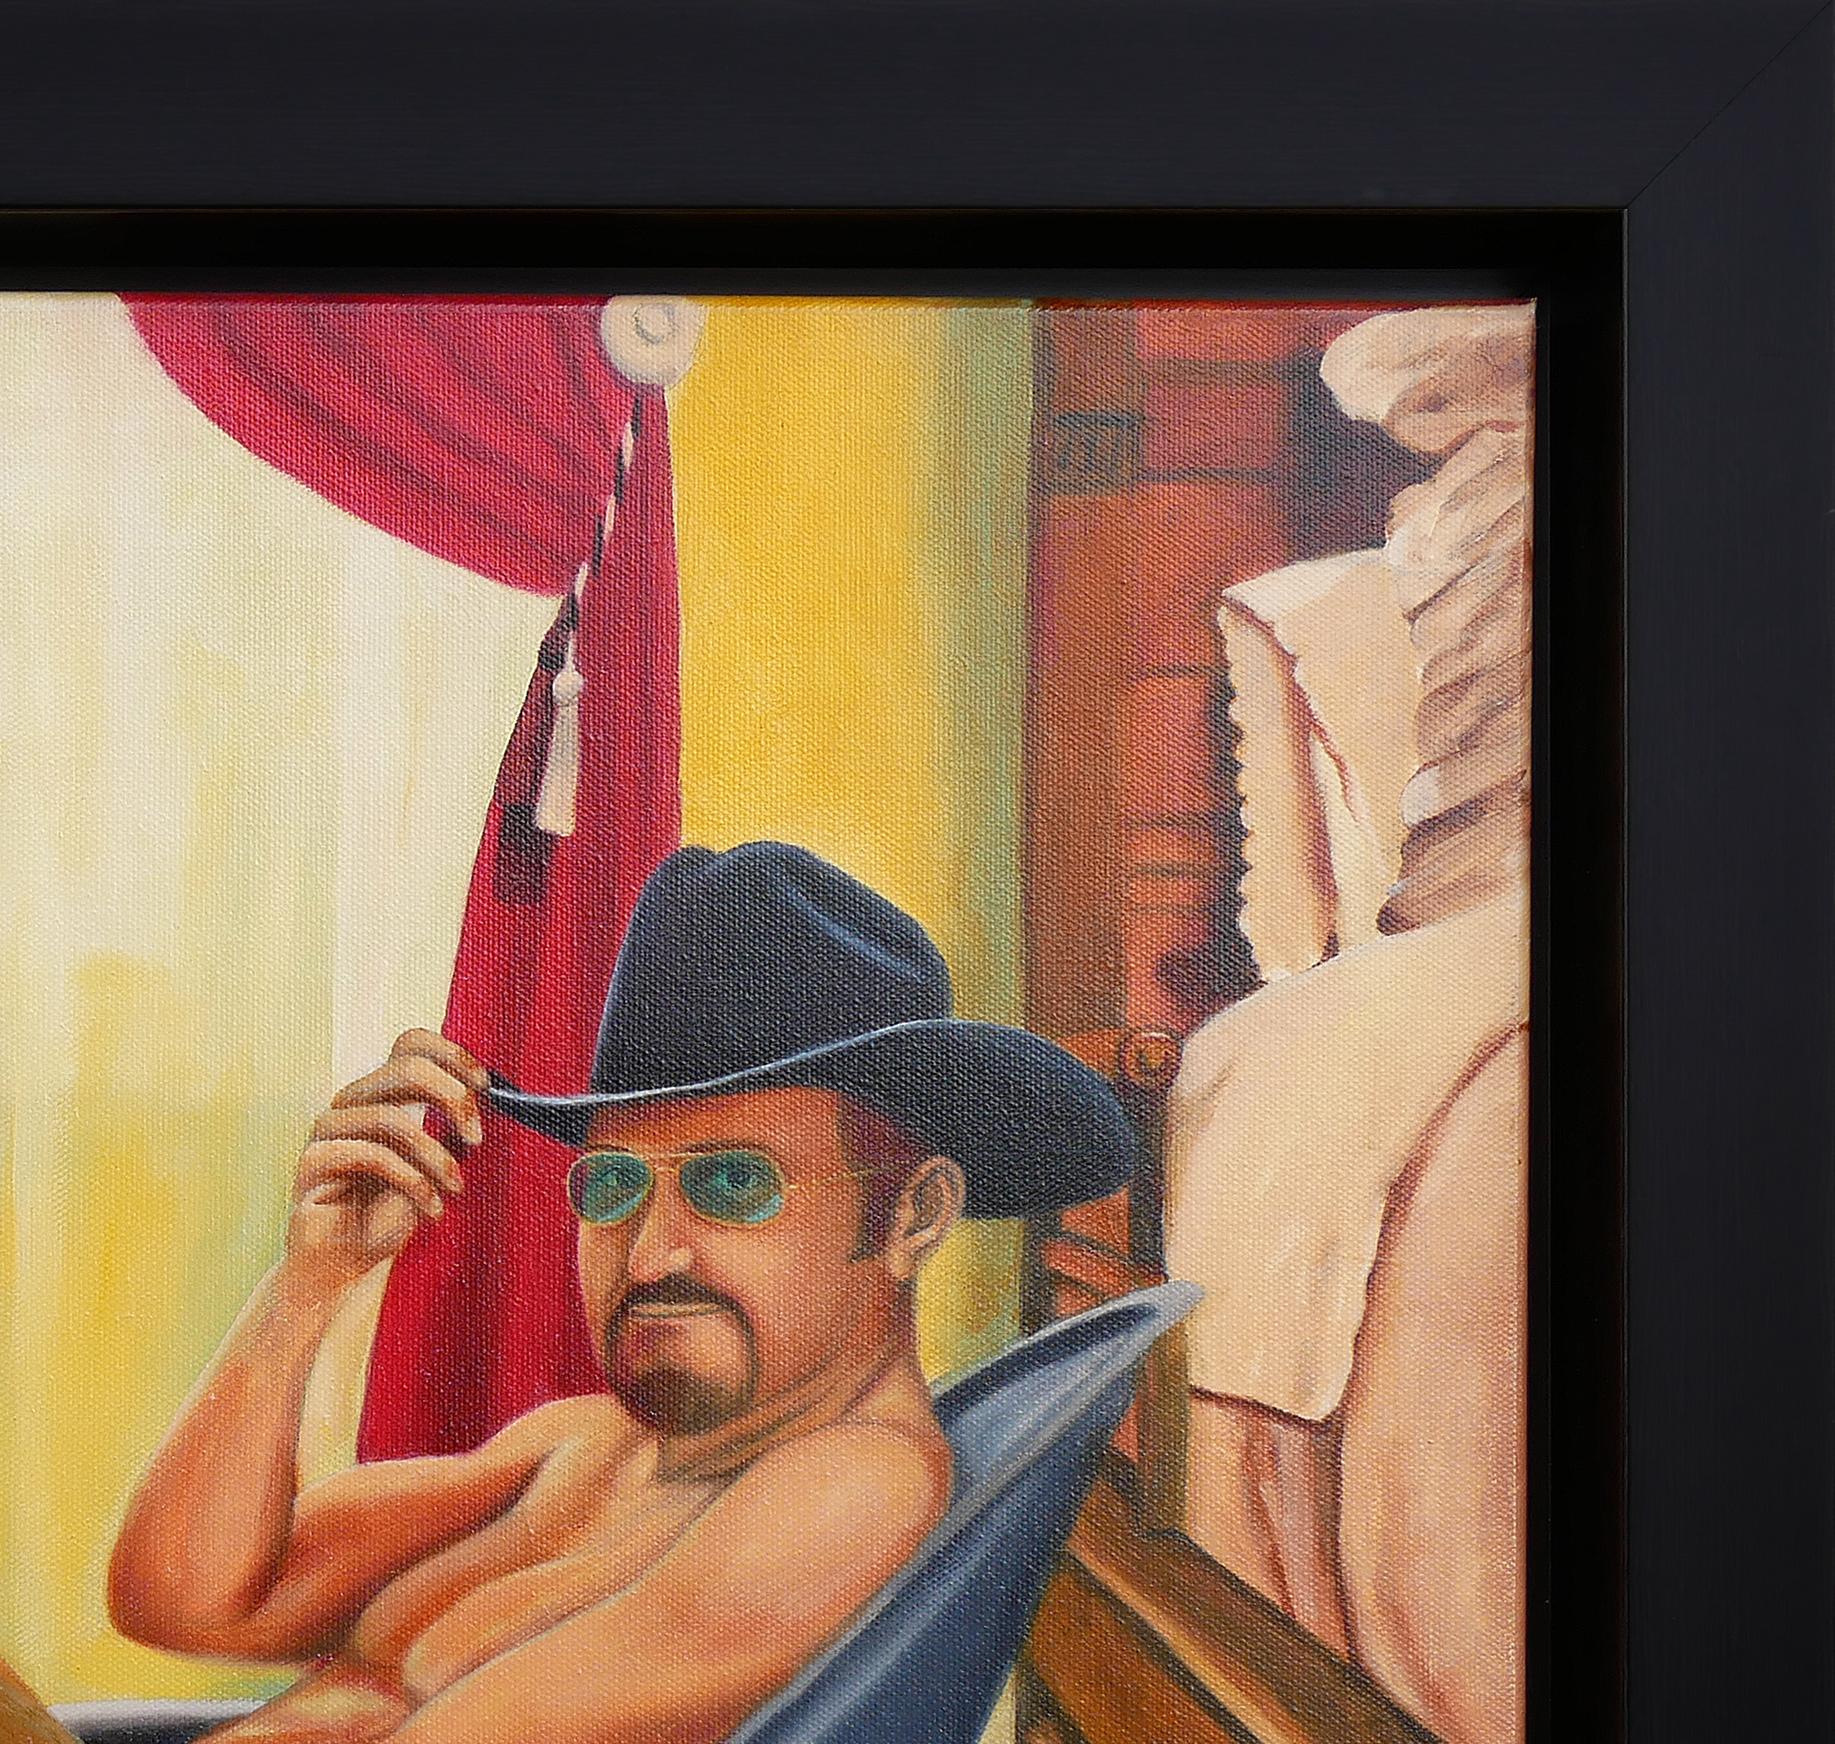 Peinture figurative abstraite aux tons chauds de l'artiste texan Bob Shepherd. Le tableau représente un homme barbu dans une petite baignoire en fer blanc. L'homme porte des lunettes de soleil, un chapeau de cow-boy noir et une paire de bottes de